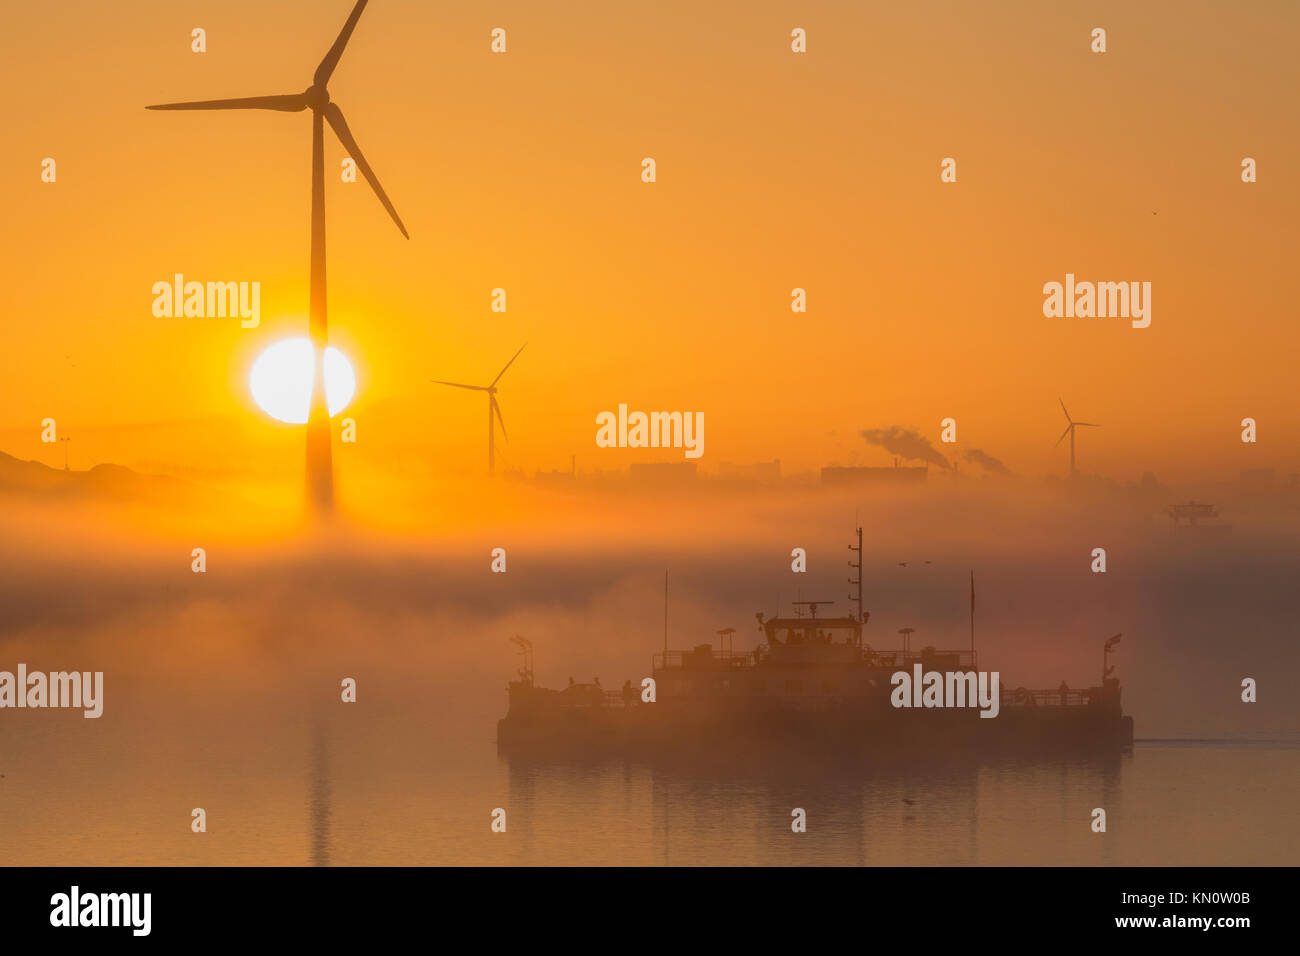 Noord-Oostzeekanaal early morning mist Stock Photo